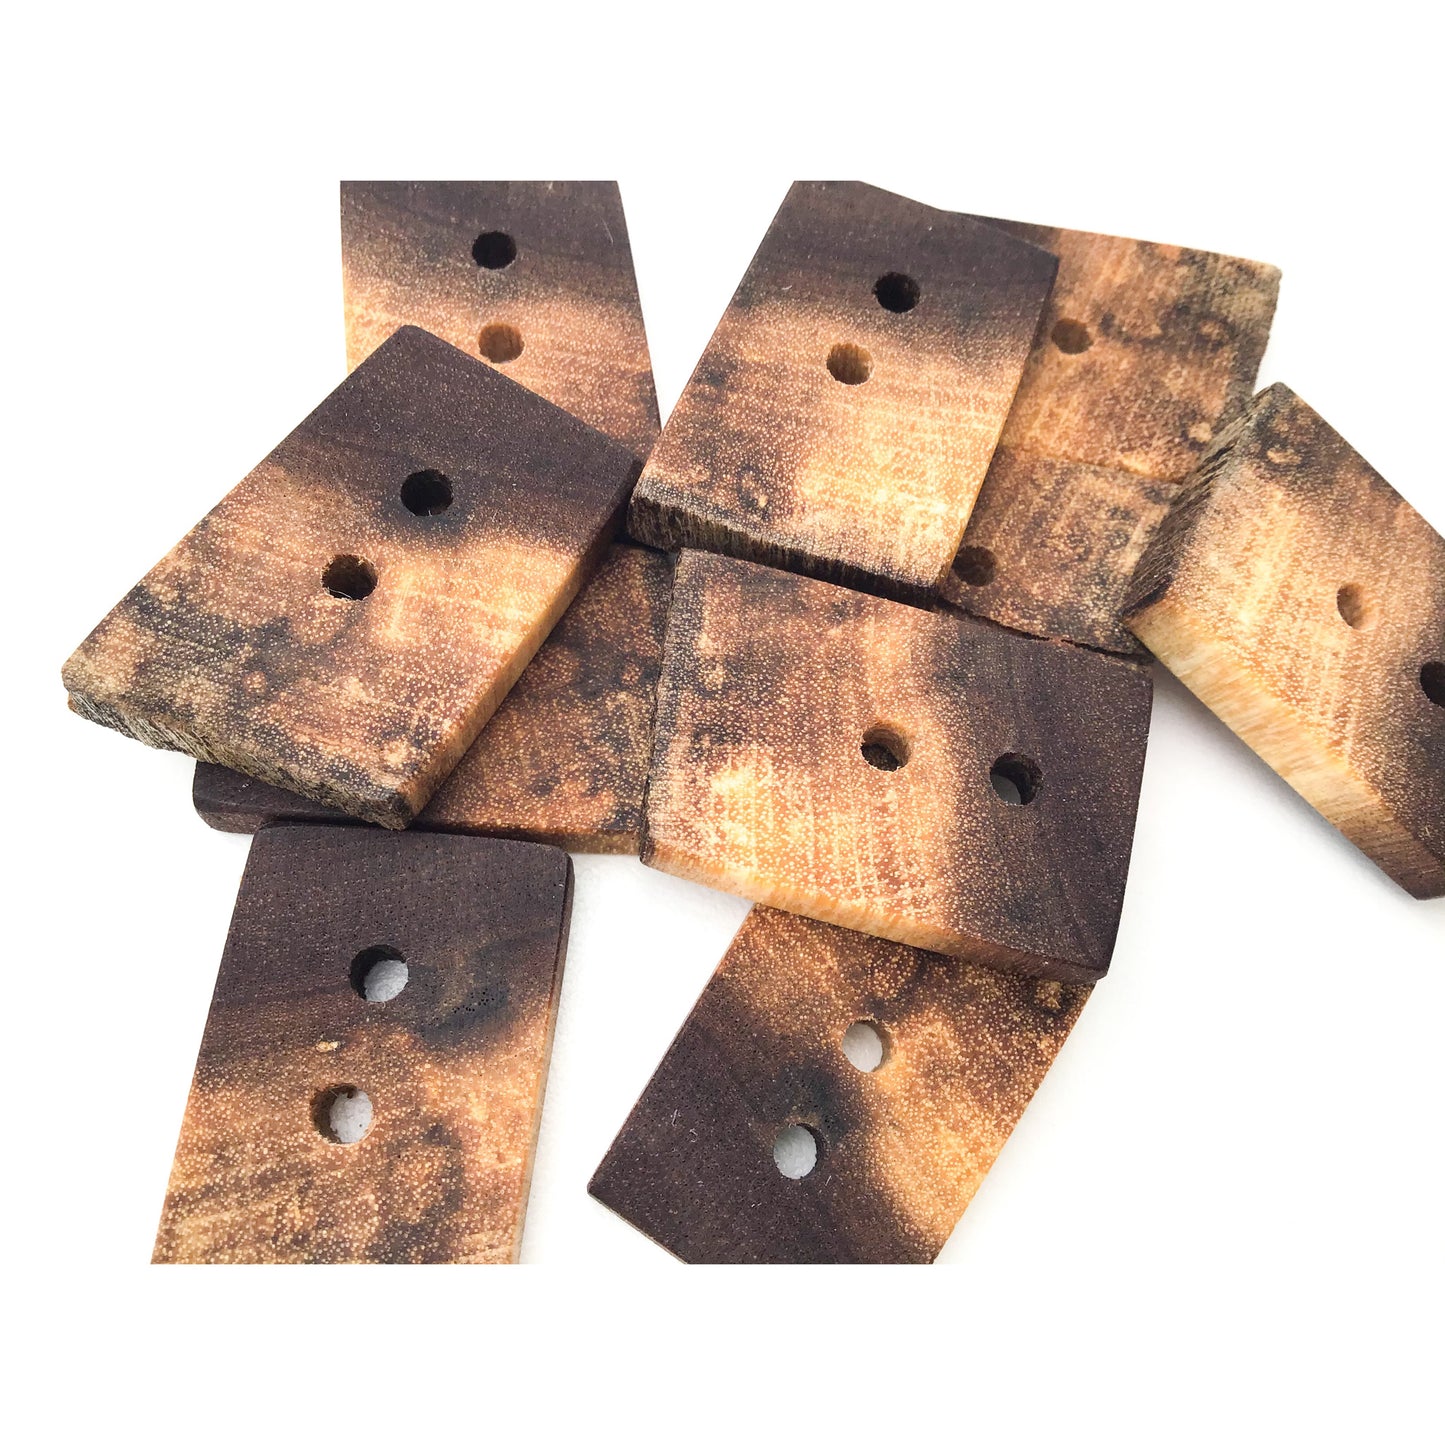 Rustic Black Walnut Wood Buttons - Live Edge Black Walnut Buttons - 1 3/16" x 1 3/8"